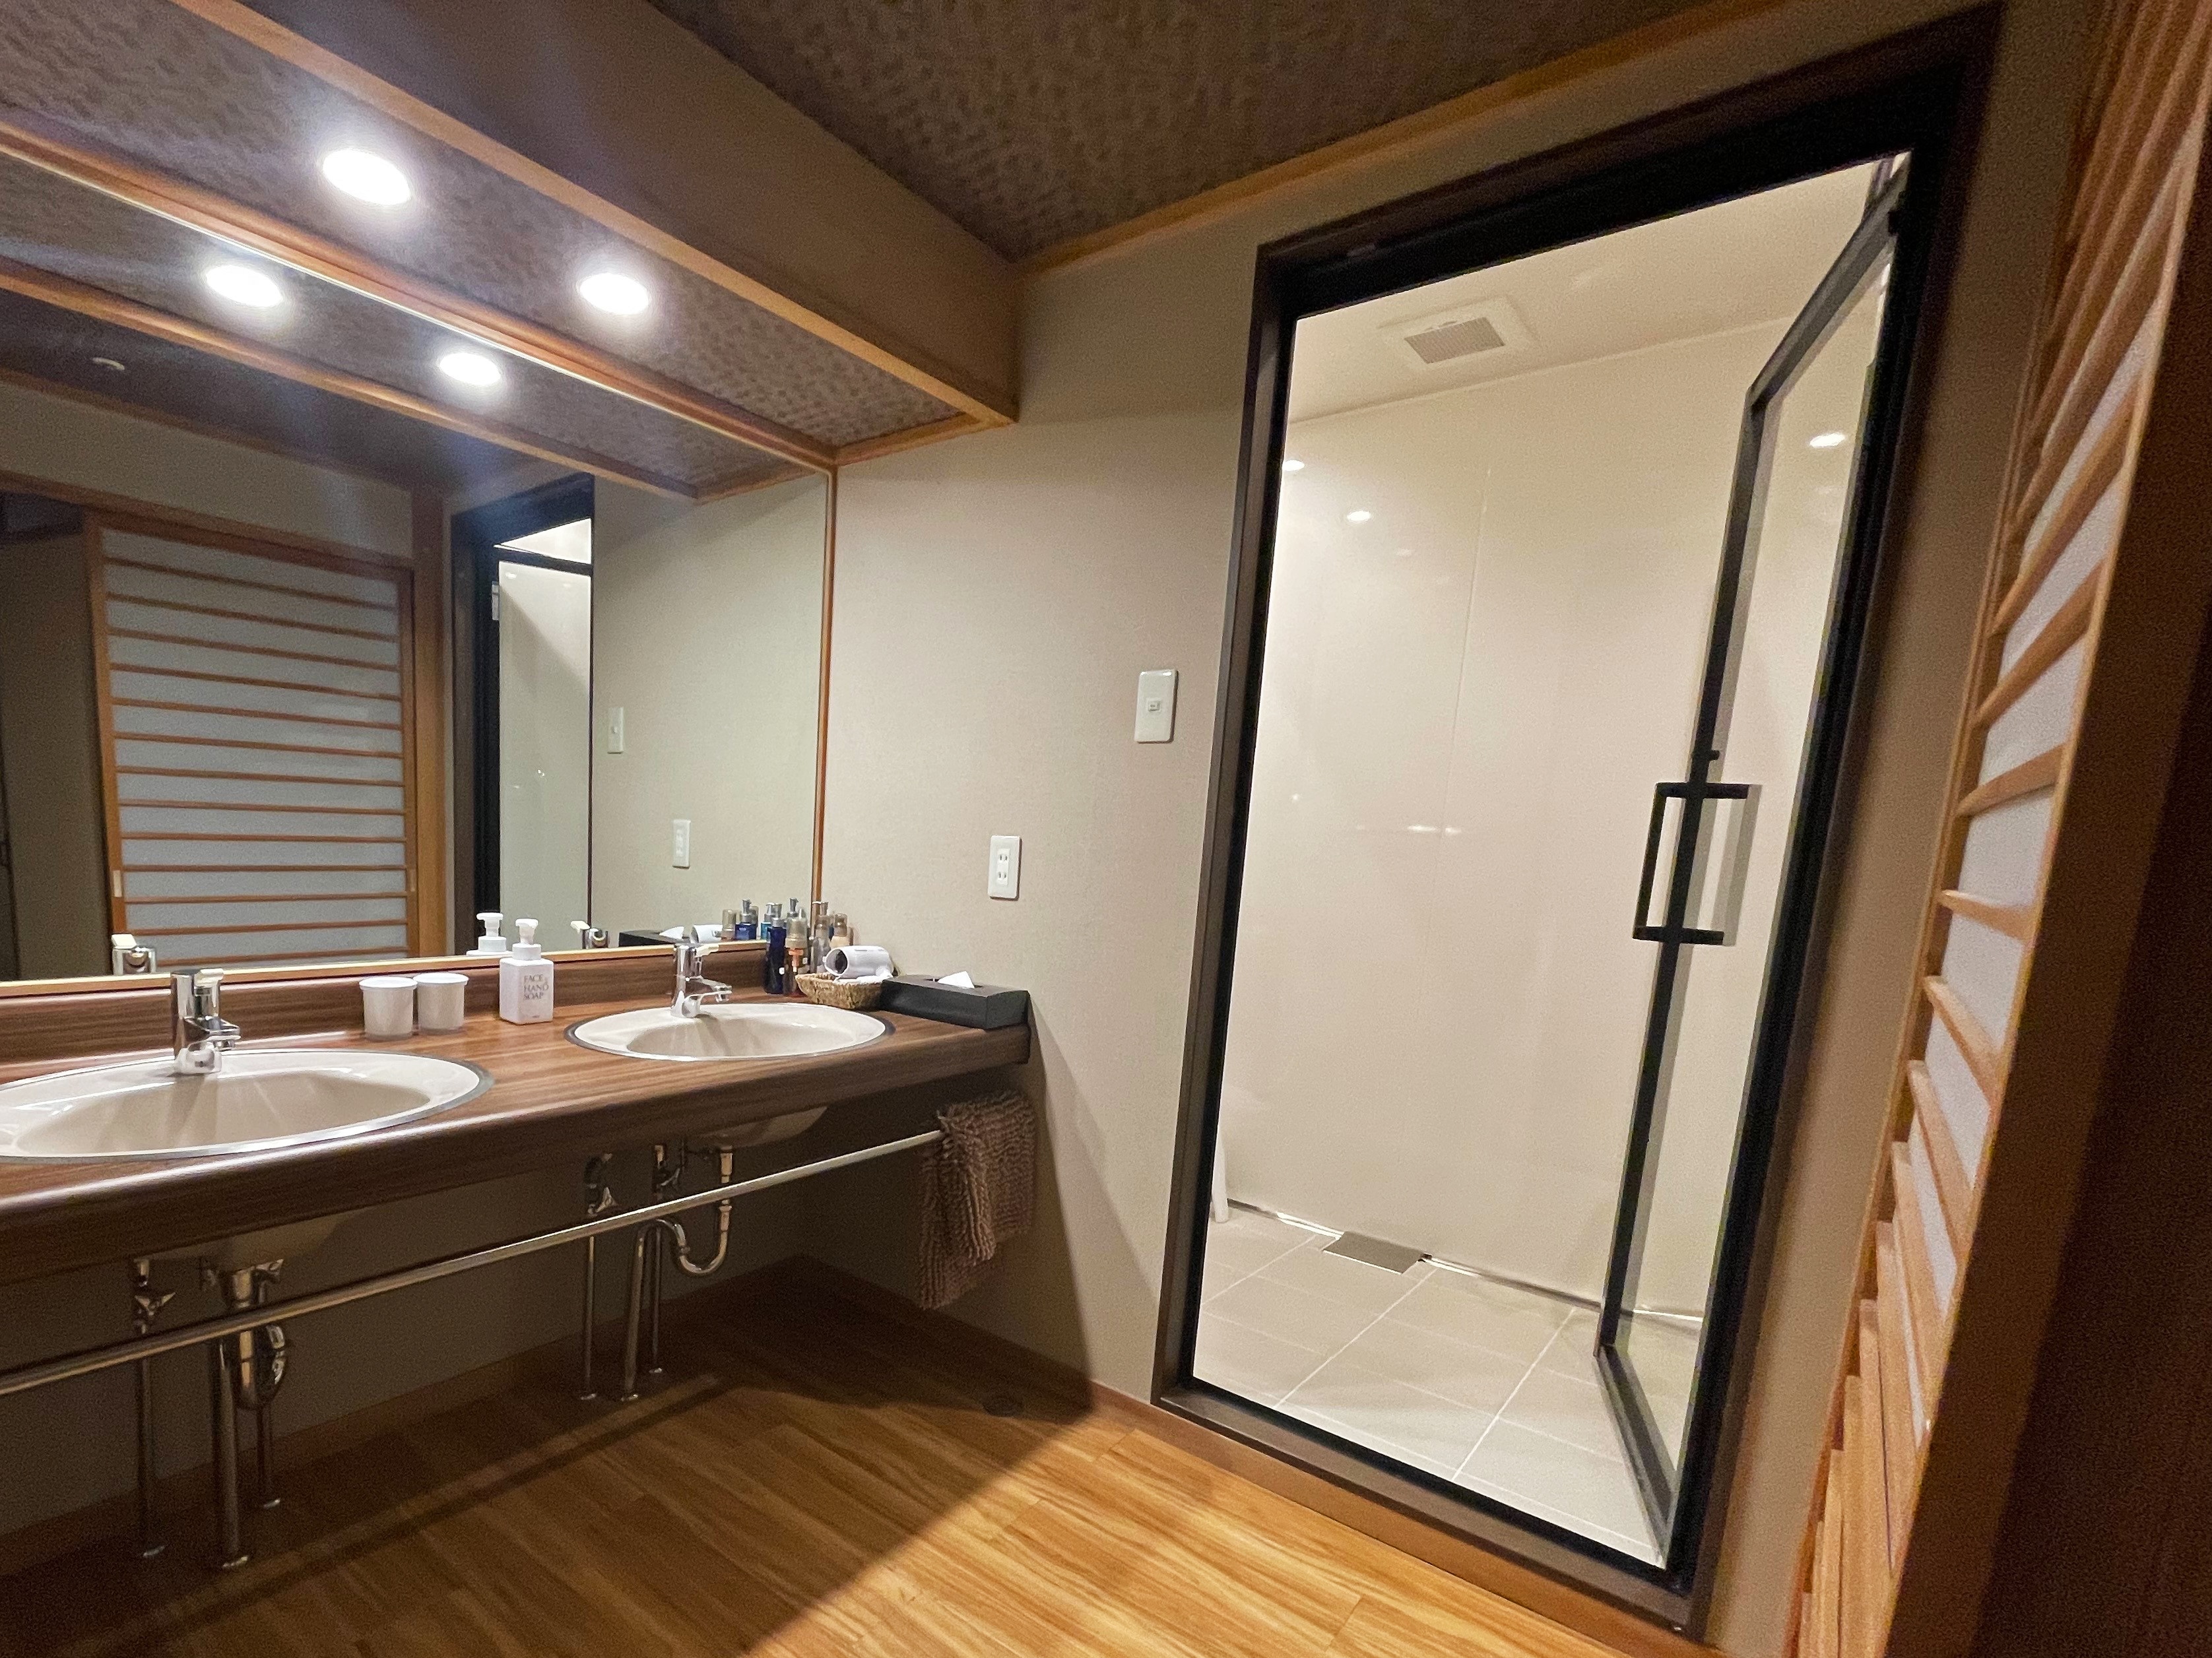 【现代套房】日式房间12.5榻榻米+双床◆带淋浴